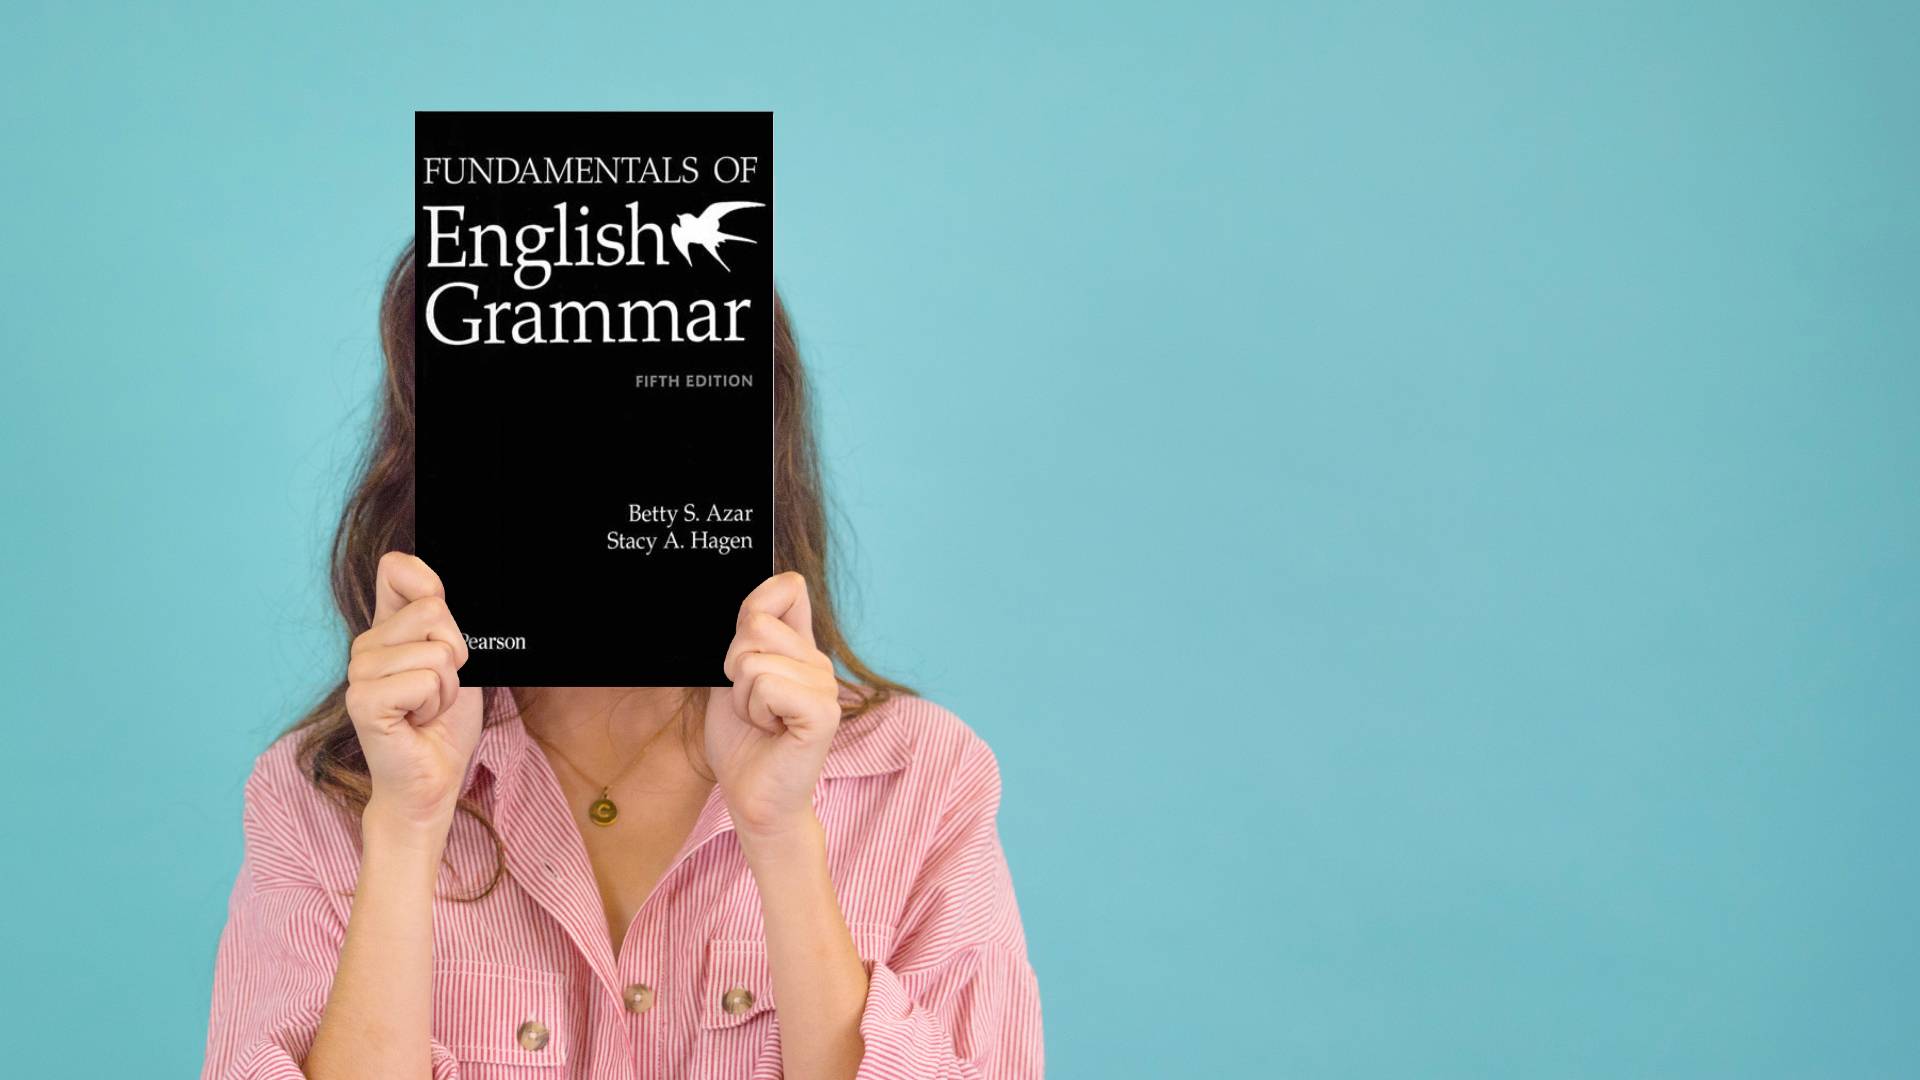 خرید کتاب زبان | فروشگاه اینترنتی کتاب زبان | Fundamentals of English Grammar Fifth Edition Betty S. Azar | فاندامنتال اف انگلیش گرامر ویرایش پنجم بتی آذر